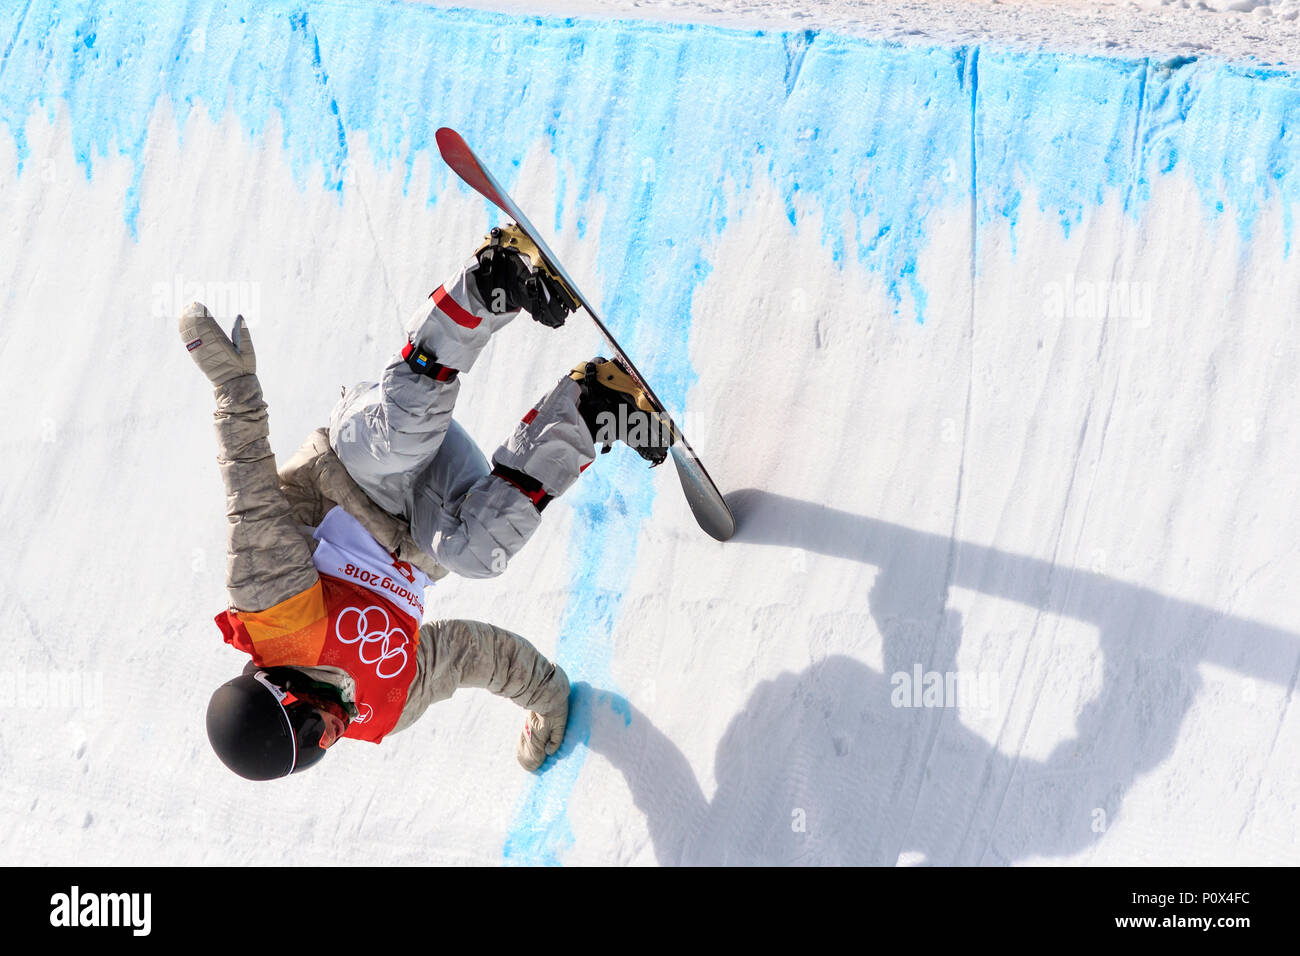 Chase Josey (USA) konkurrieren in der Männer Snowboard Halfpipe Qualifikation bei den Olympischen Winterspielen PyeongChang 2018 Stockfoto